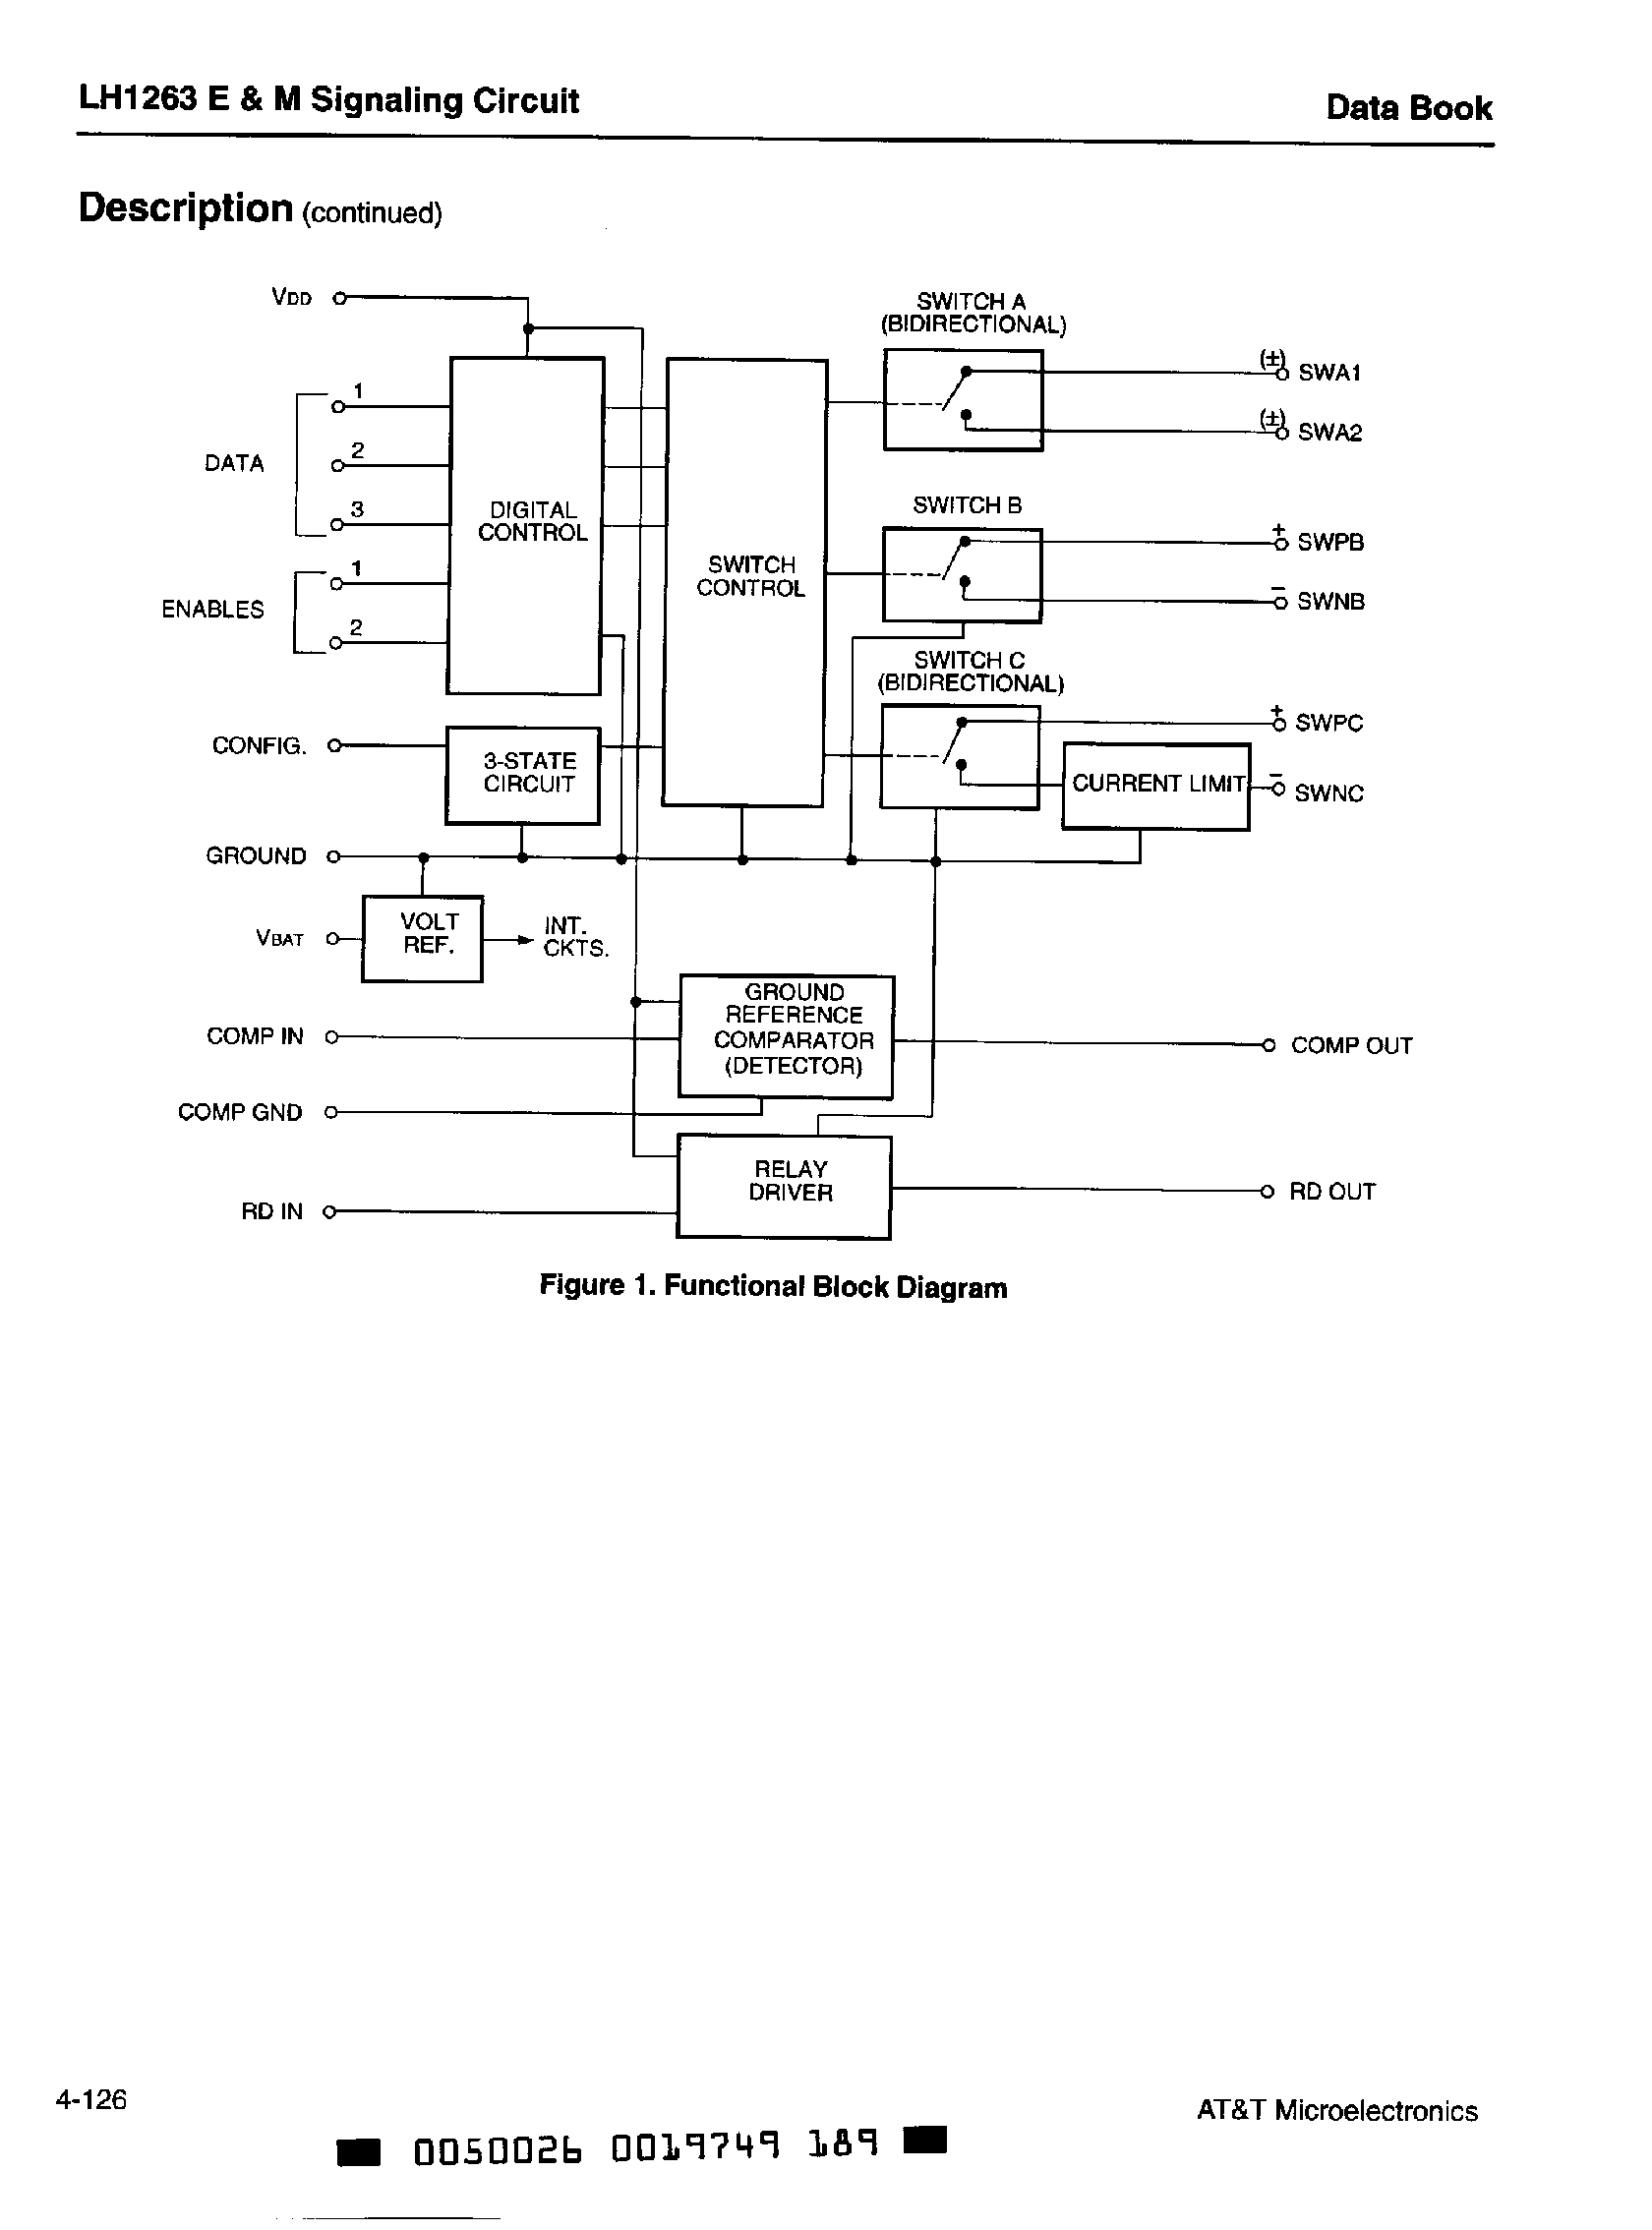 Даташит LH1263 - E & M Signaling Circuit страница 2